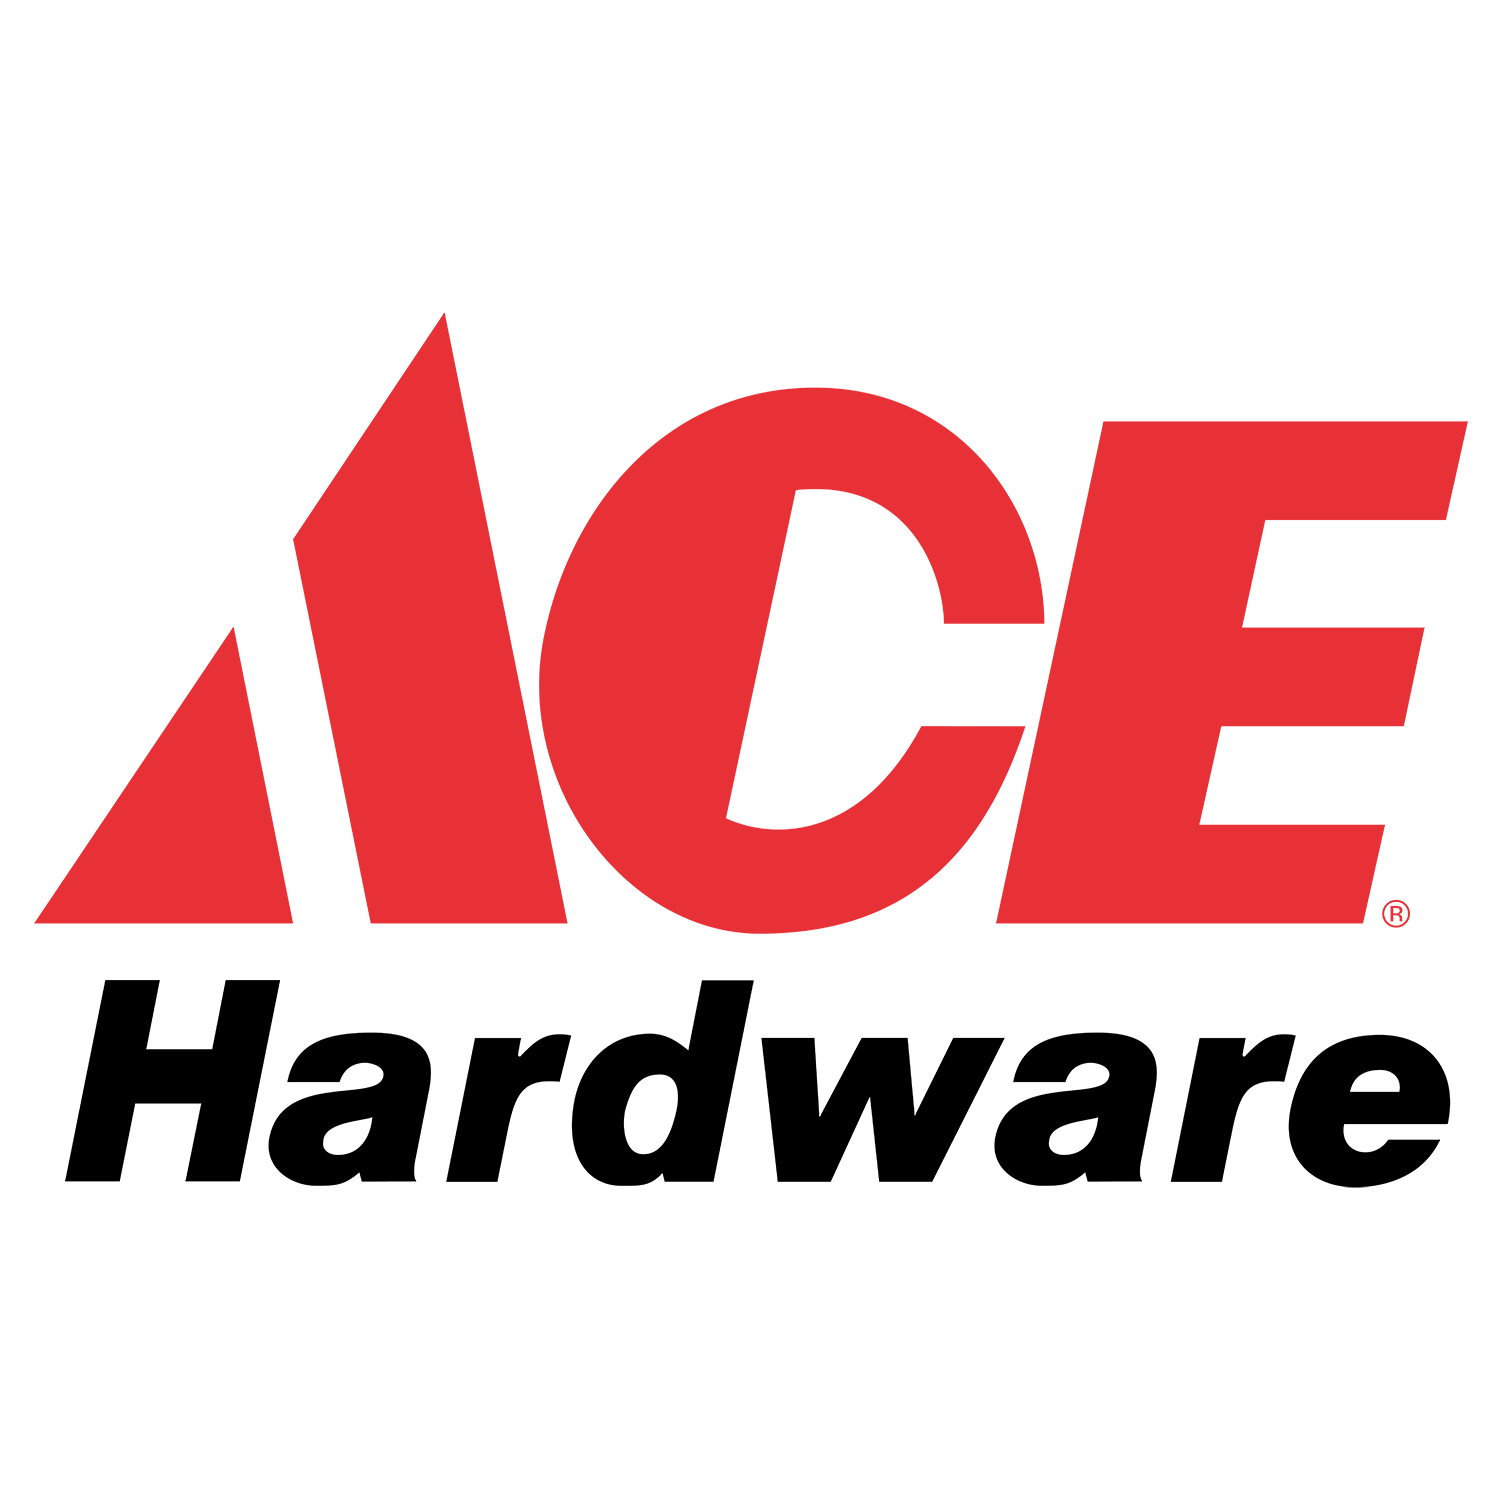 Ace Hardware logo